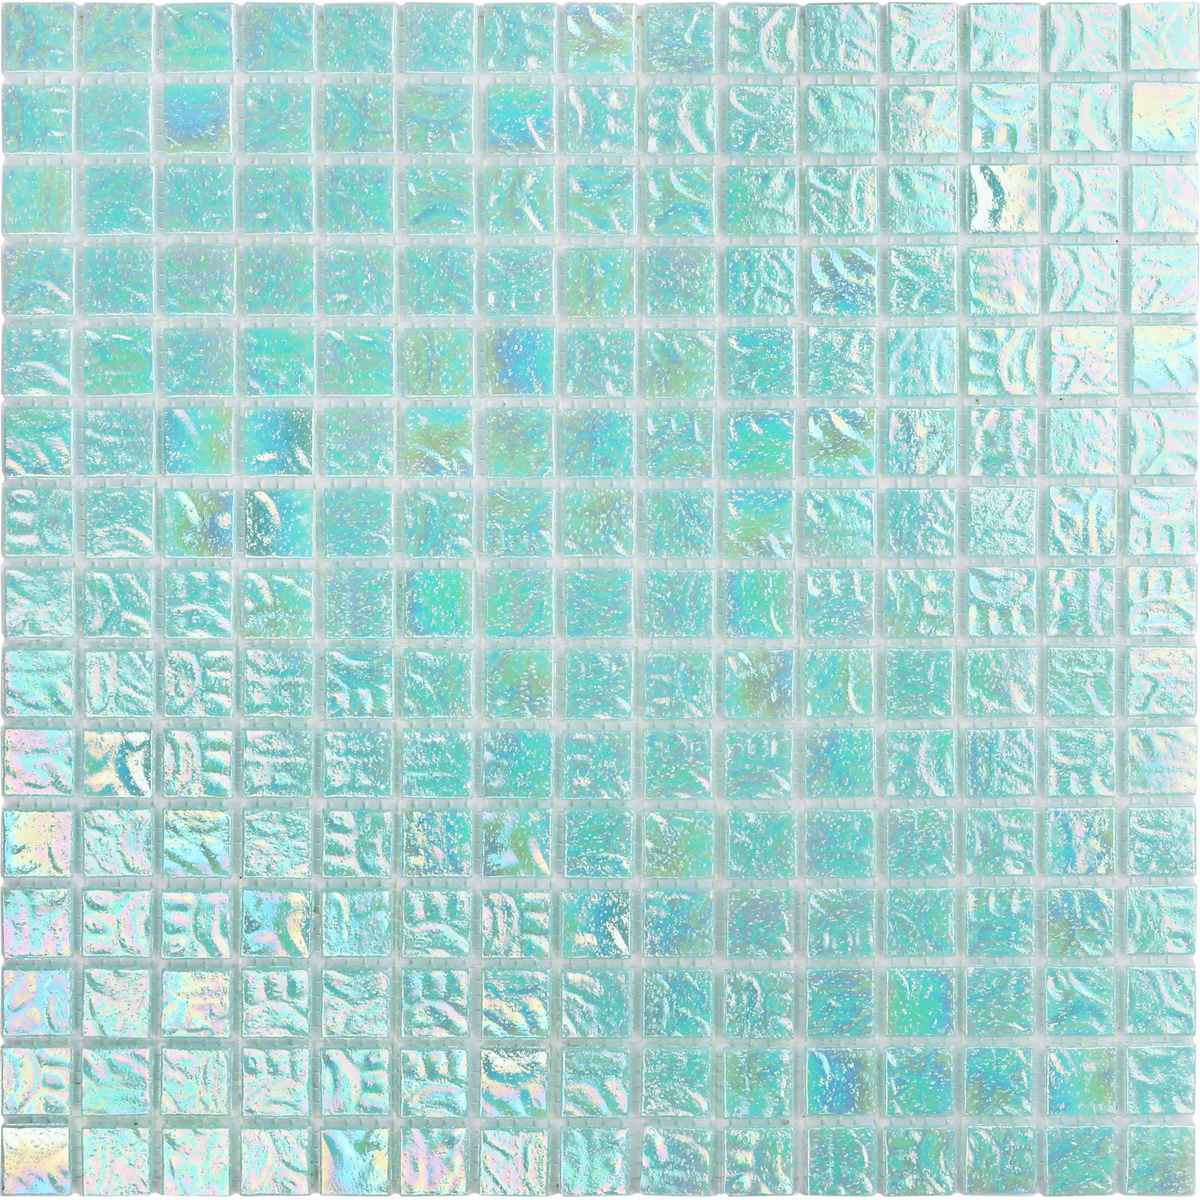 Swimming pool aqua glass mosaic tile